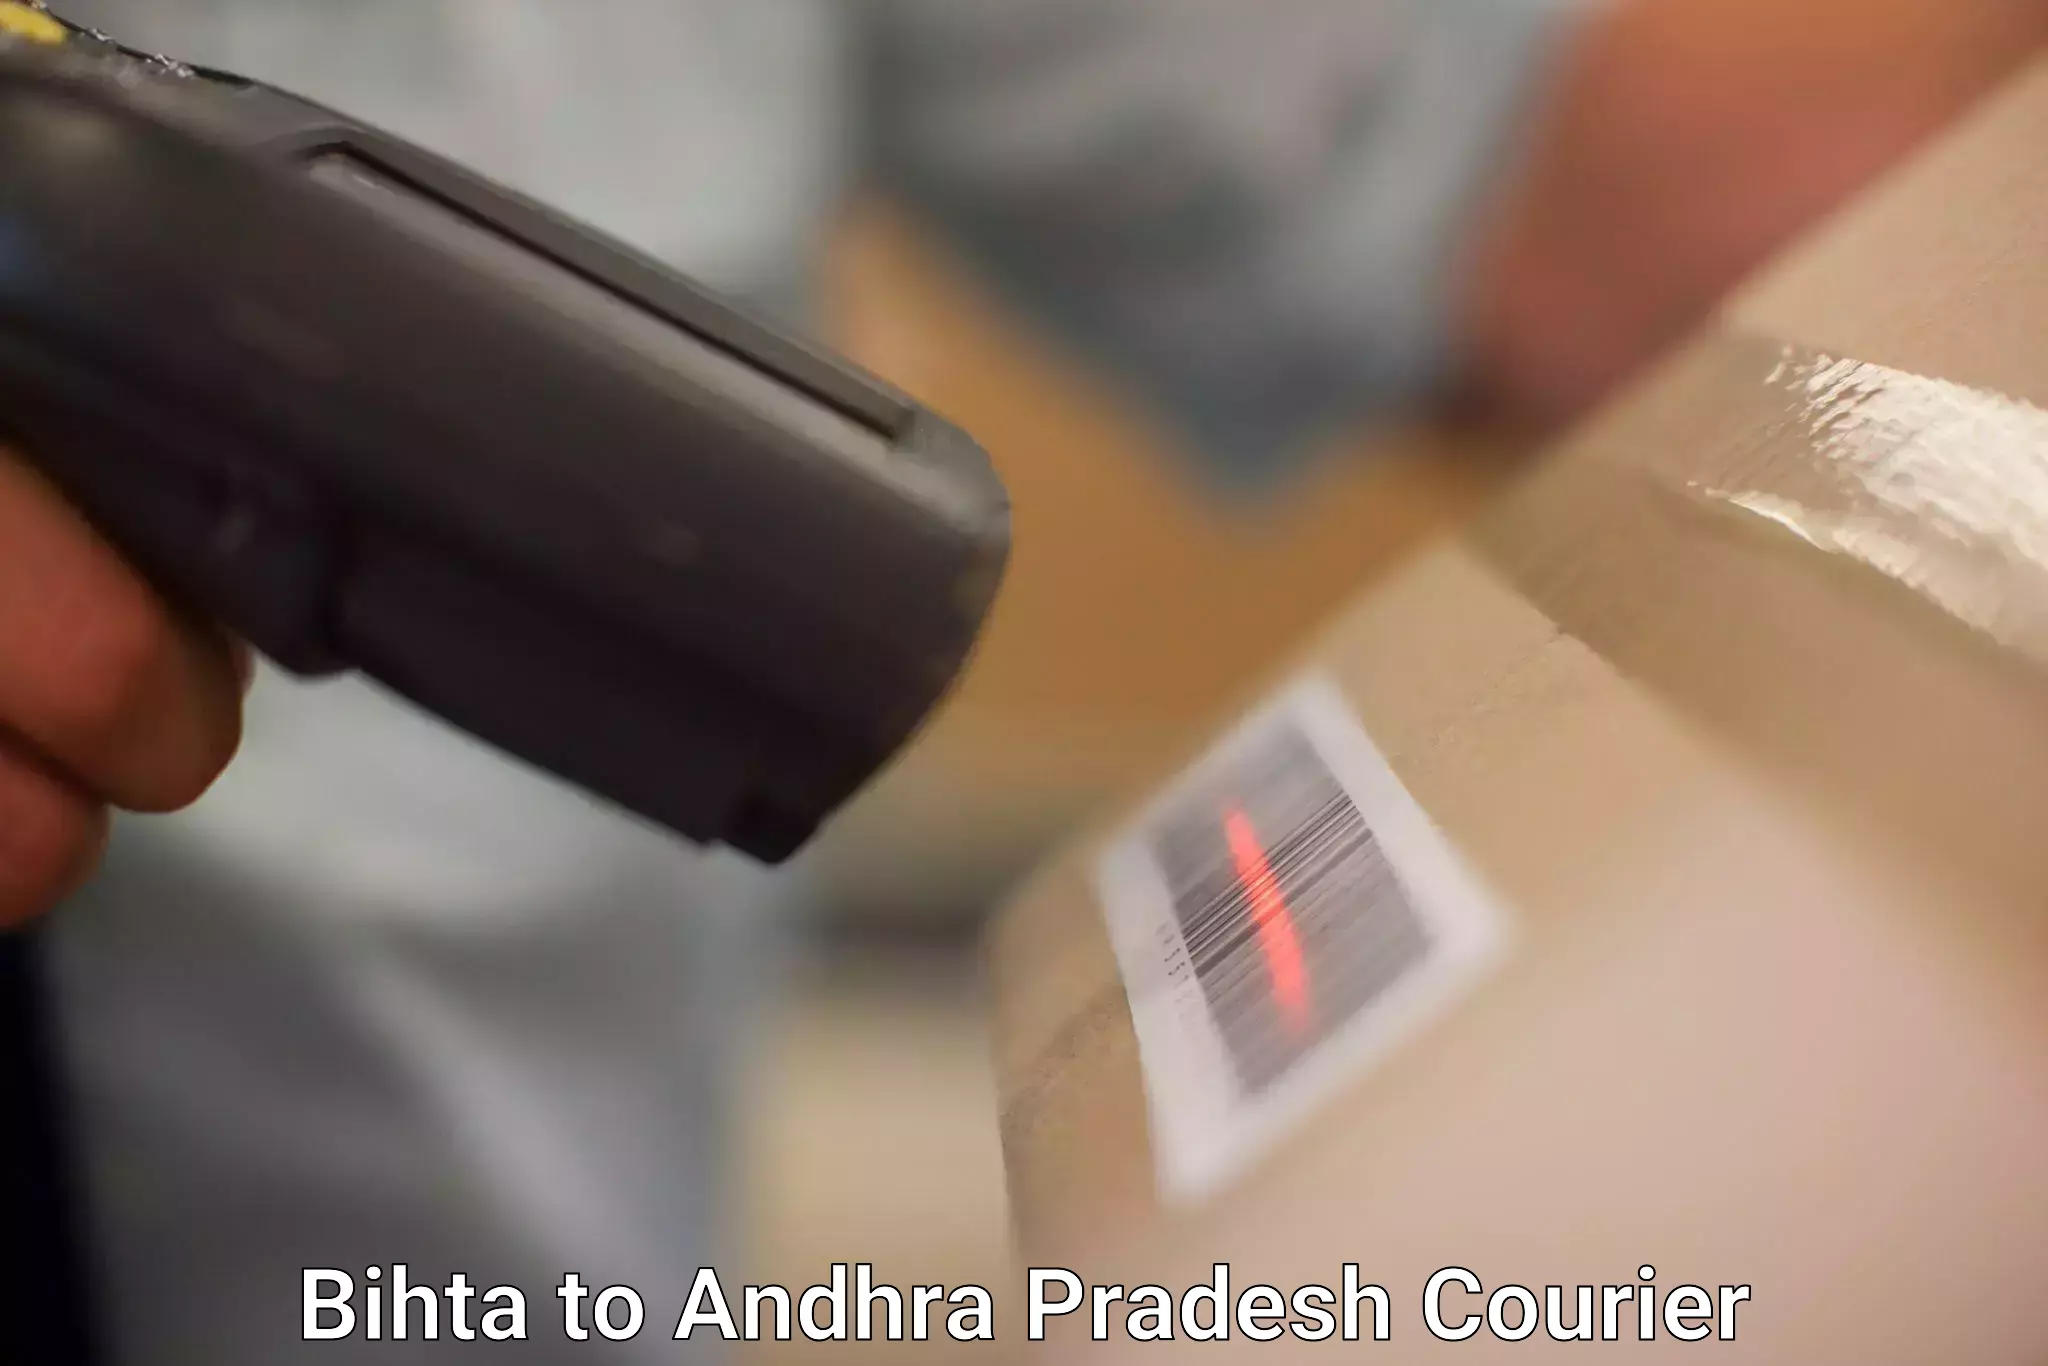 Quick parcel dispatch in Bihta to IIT Tirupati